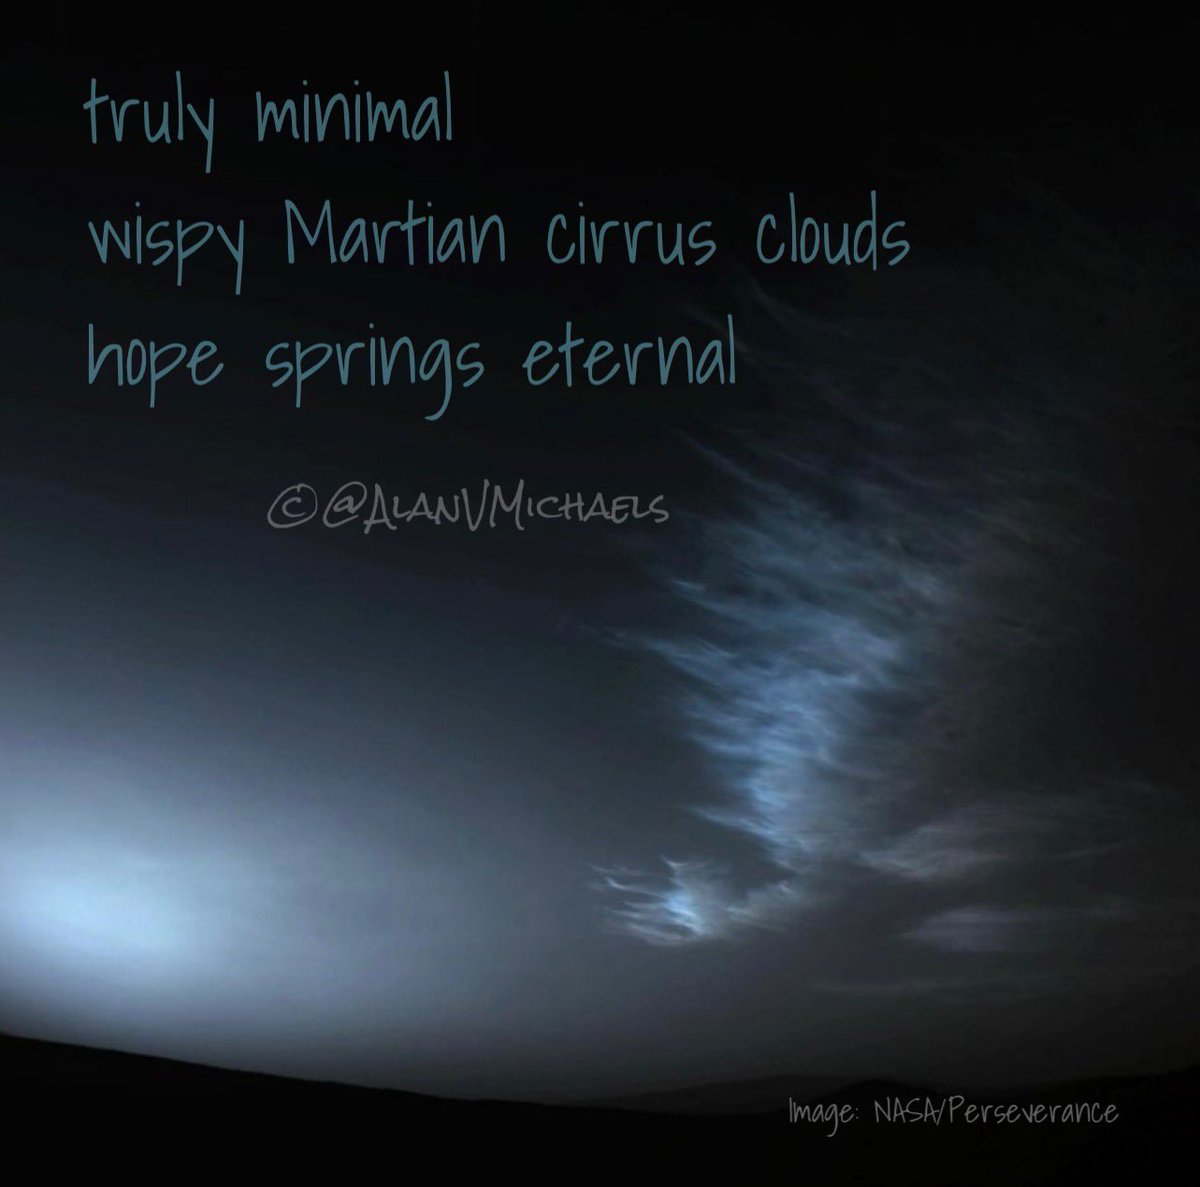 truly minimal
wispy Martian cirrus clouds
hope springs eternal

#VSS365 #minimal
#Haiku
#Poetry
#PoetryCommunity 
📷 #NASA #PerseveranceRover #Perseverance nav camera image before sunrise on Mars (March 18, 2023)